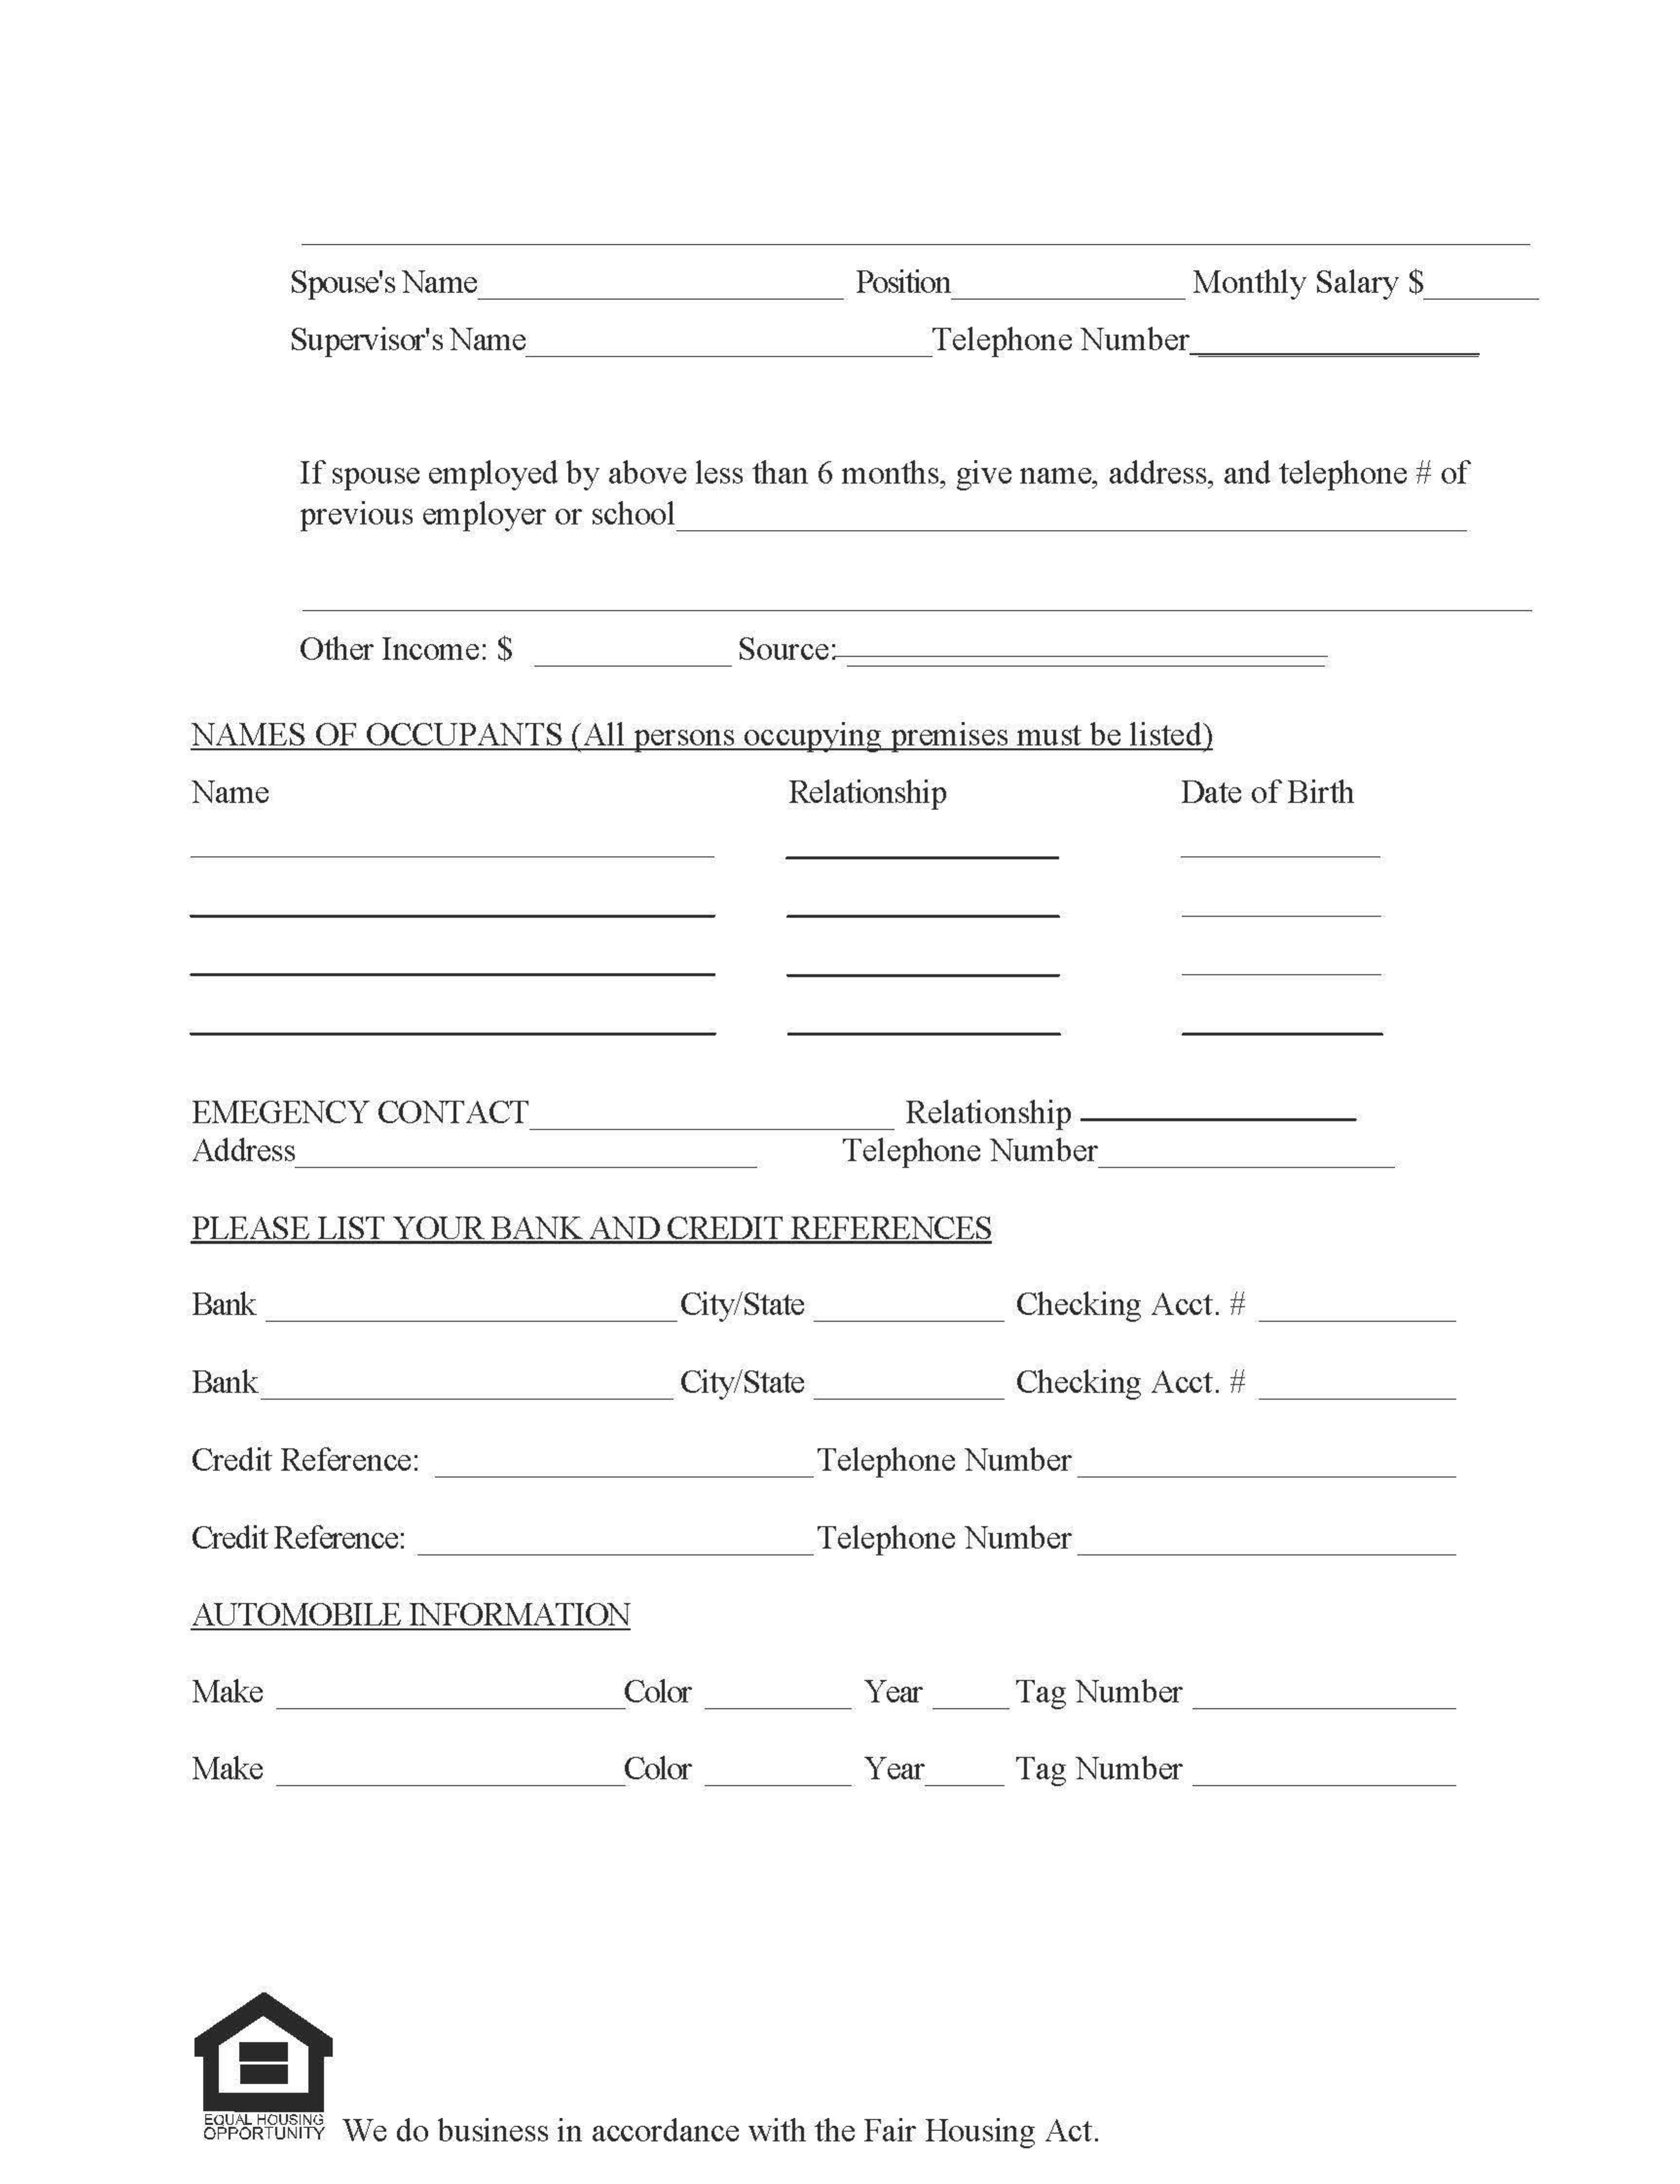 Mississippi Rental Application Form